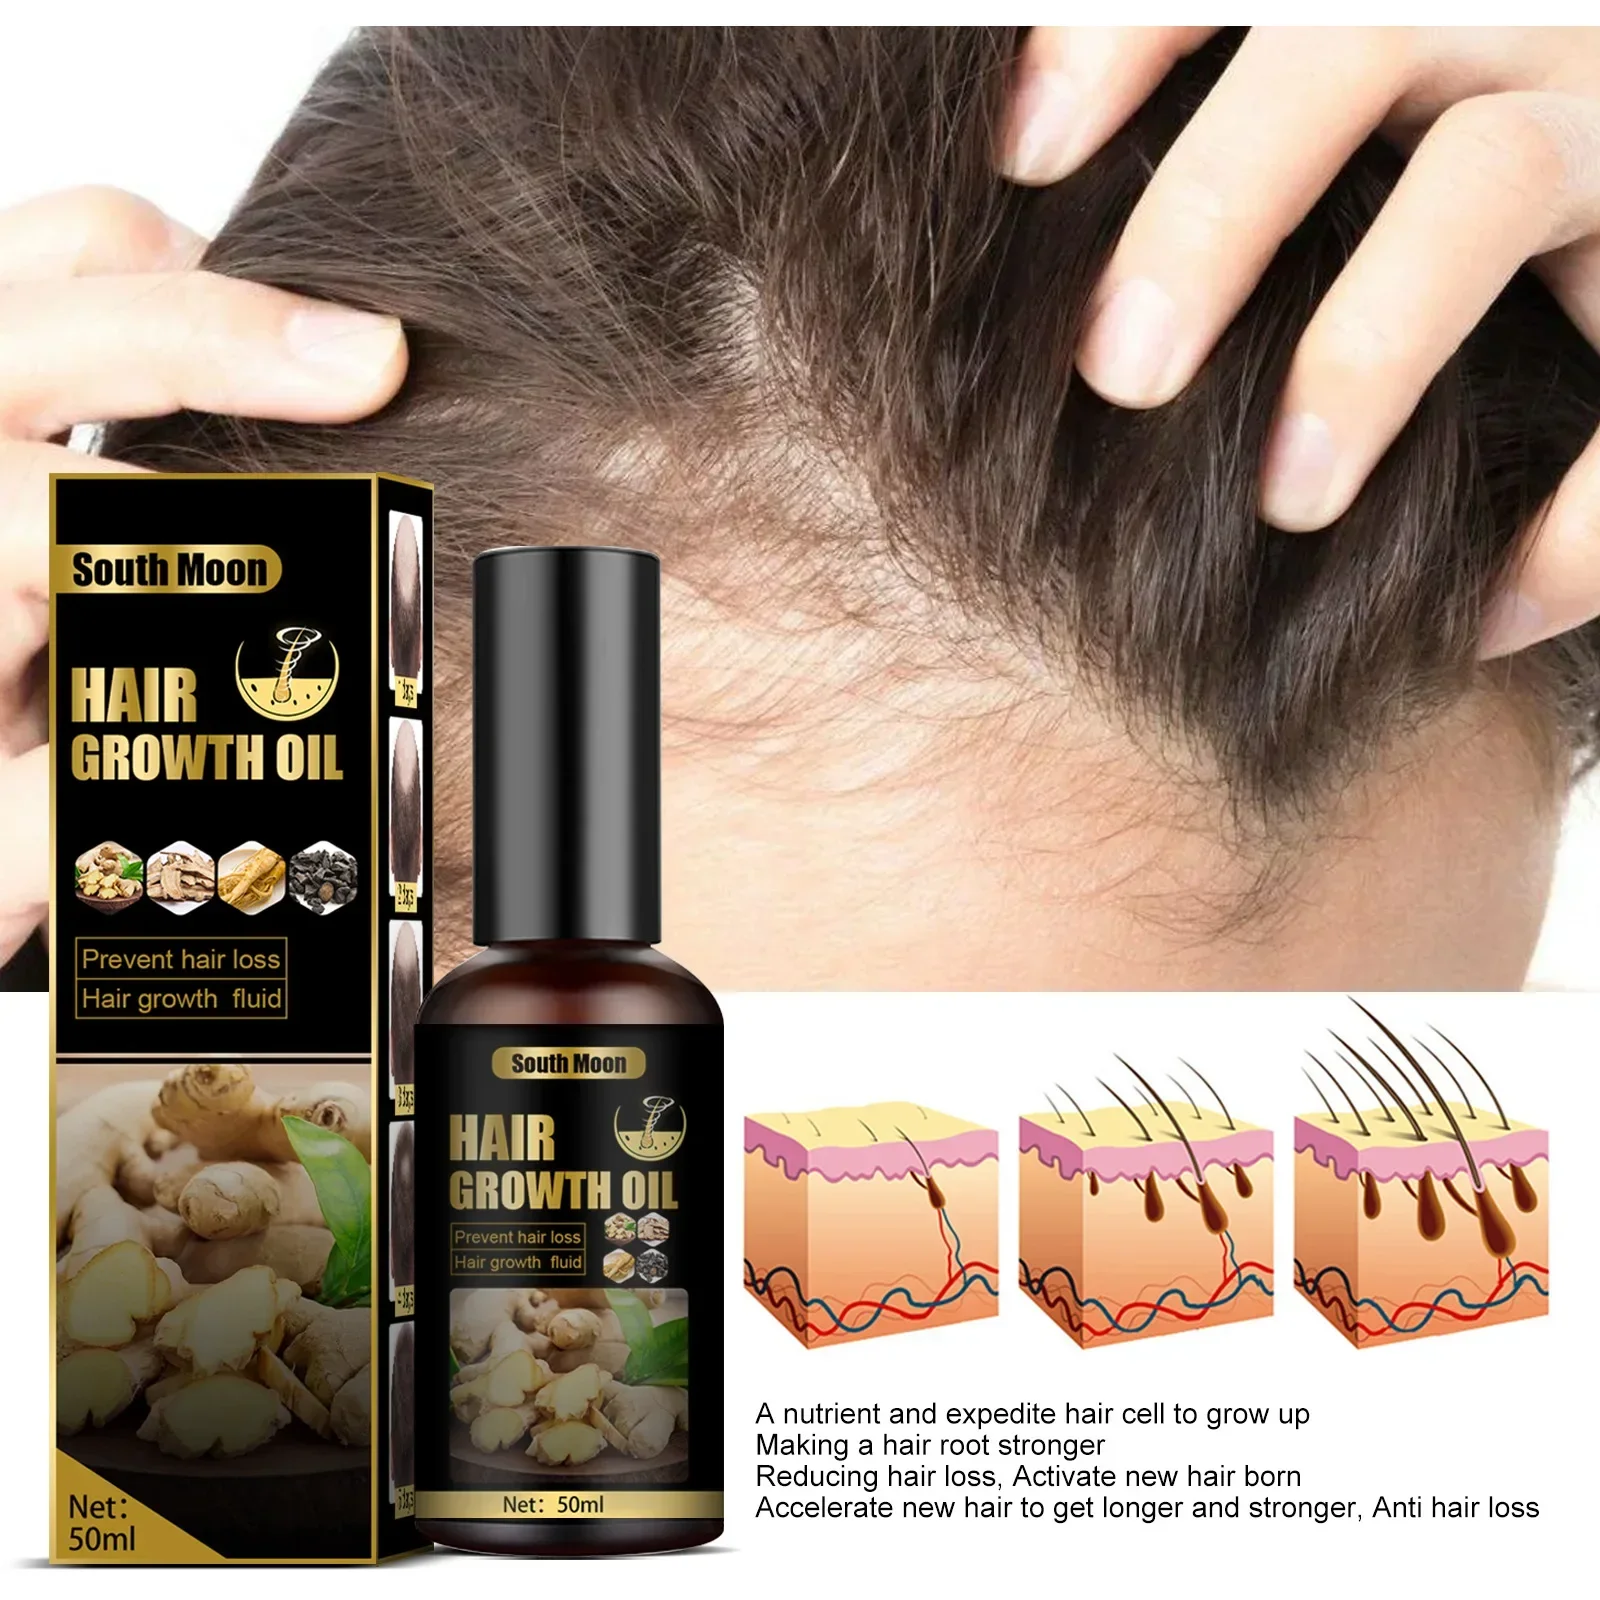 

Sdottor быстрое рост волос для мужчин женщин имбирное масло для роста волос лечение против выпадения волос лечение кожи головы продукты для красоты здоровья